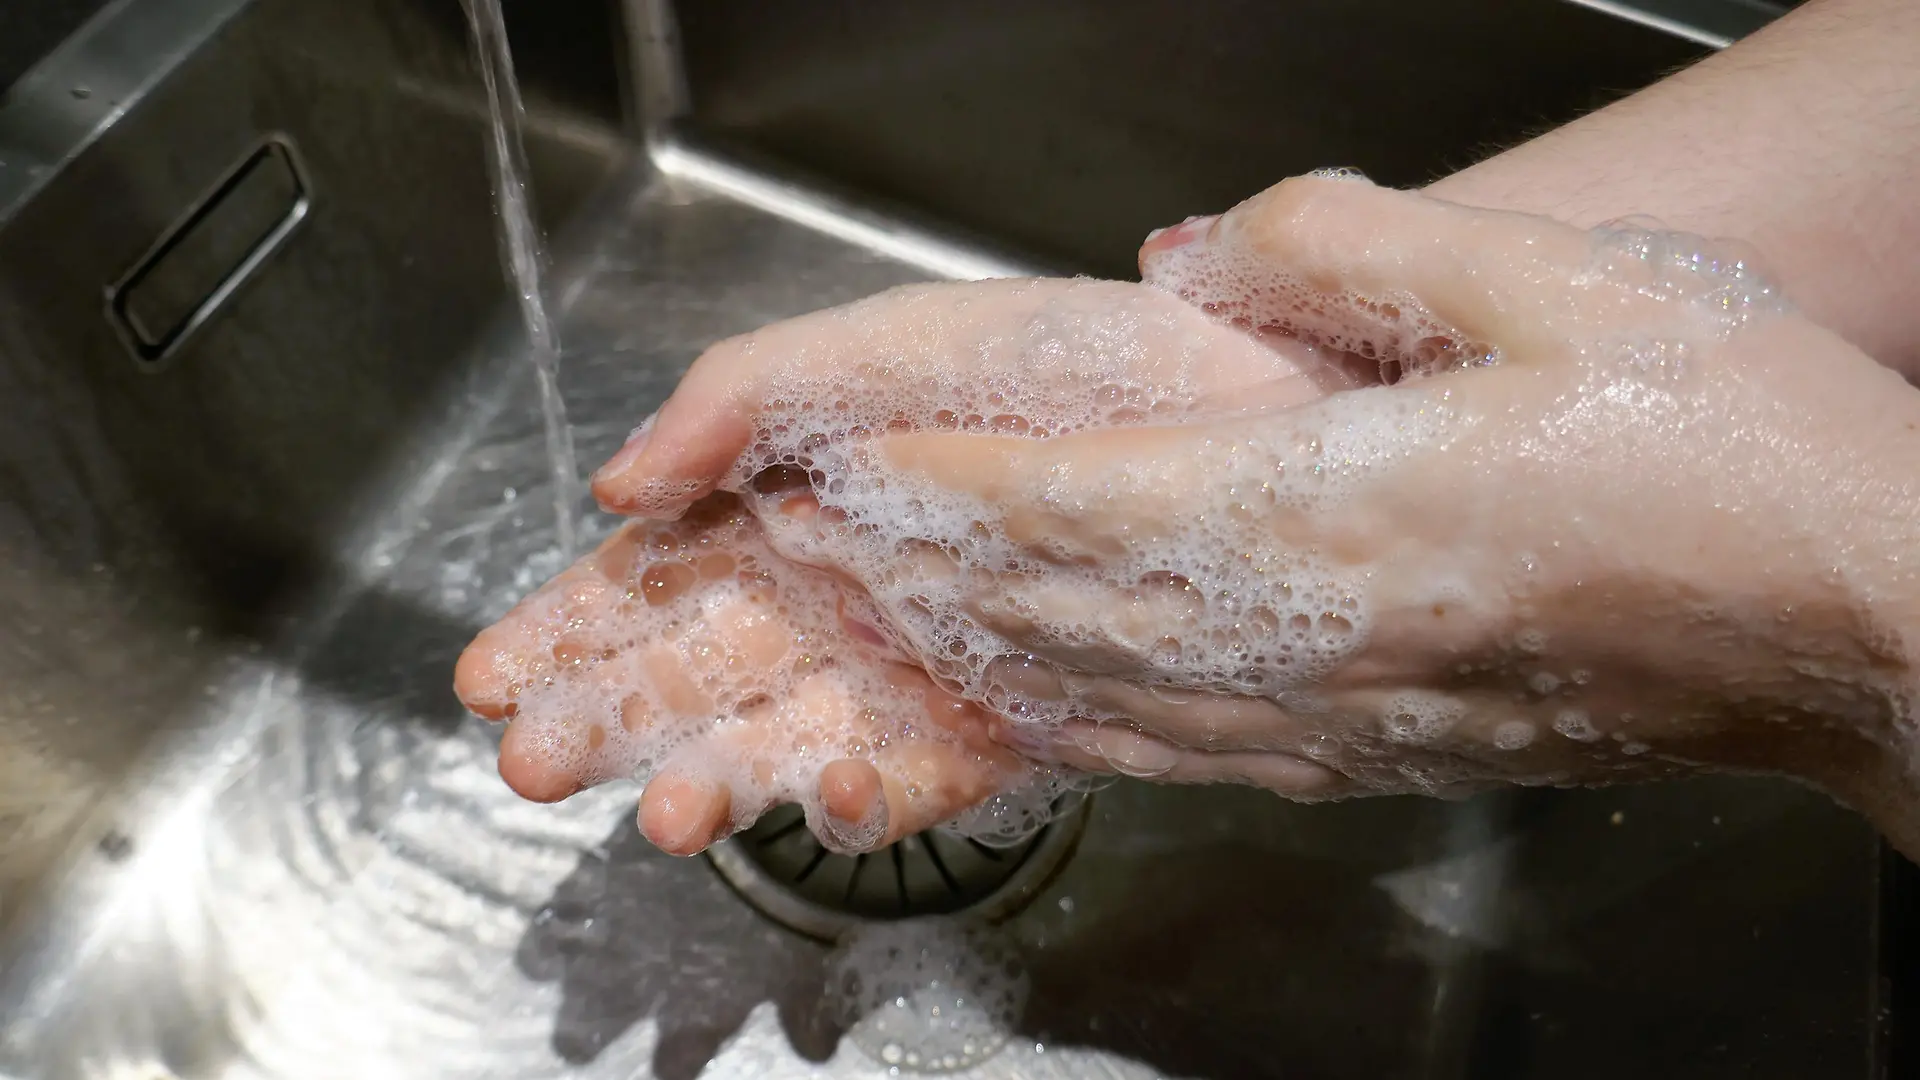 Nahaufnahme vom Hände waschen